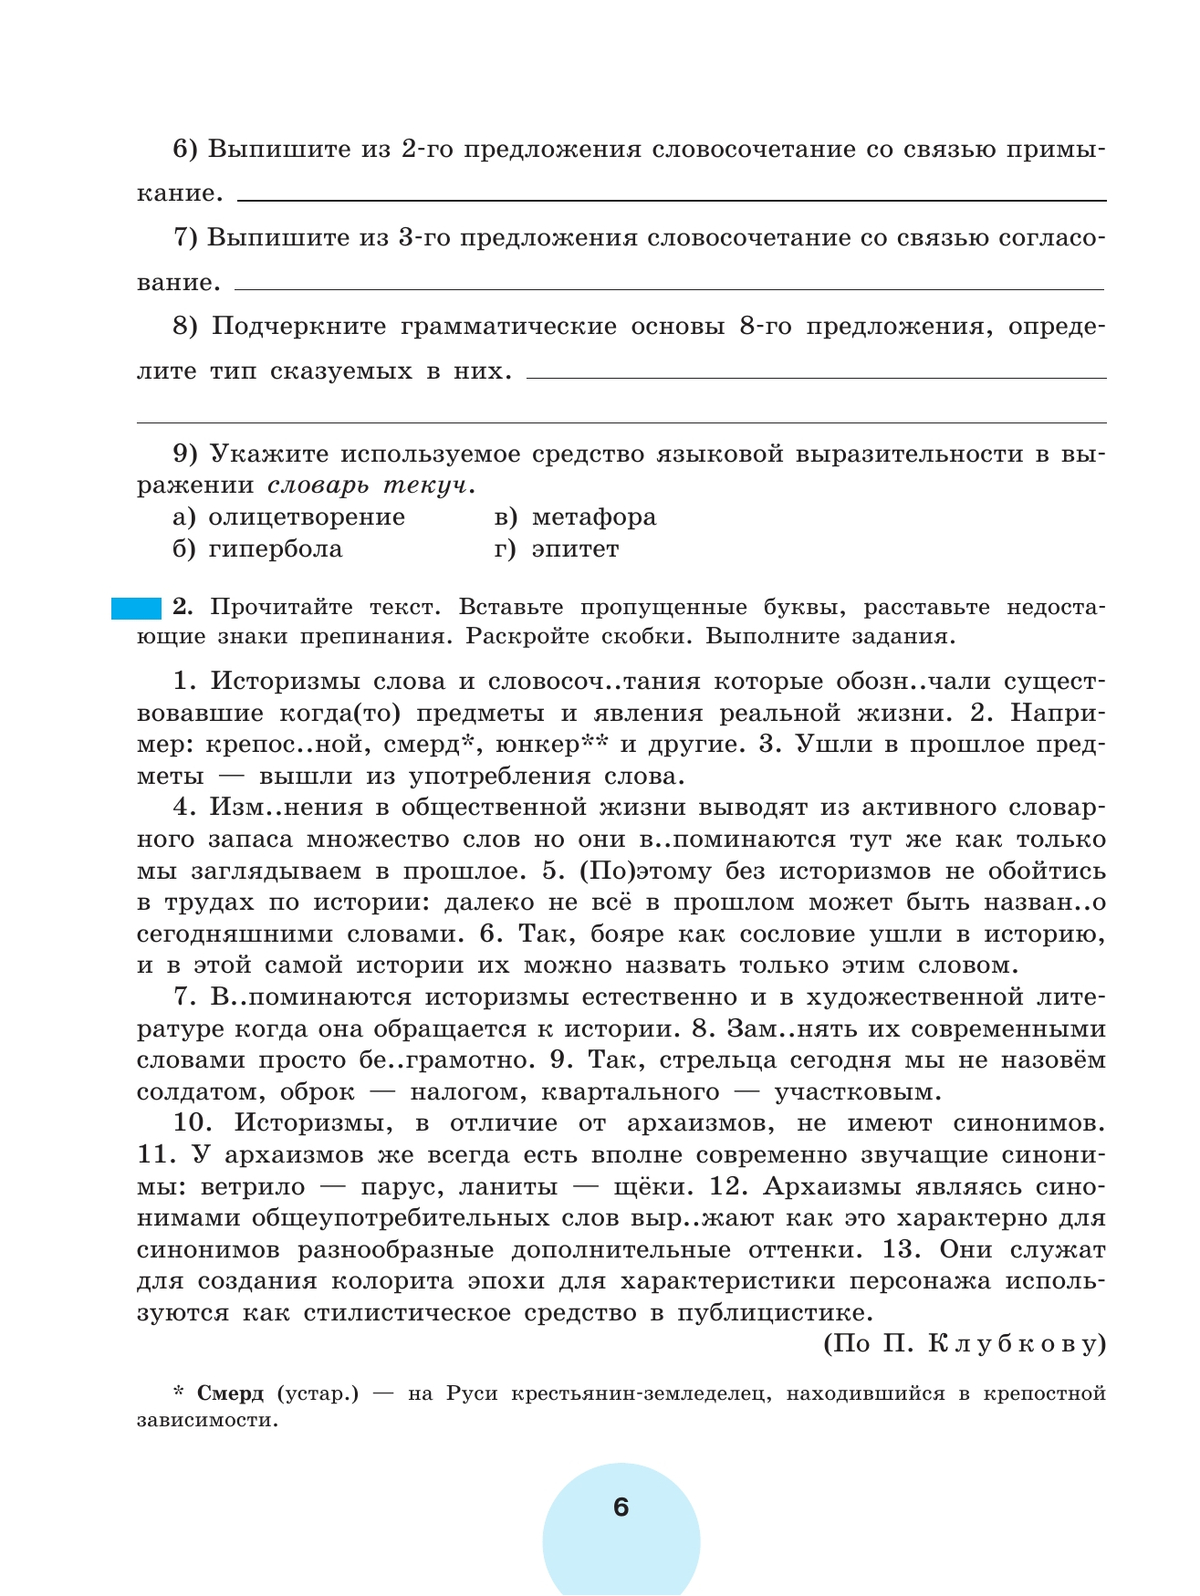 Русский язык. Рабочая тетрадь. 9 класс. В 2 ч. Часть 1 2